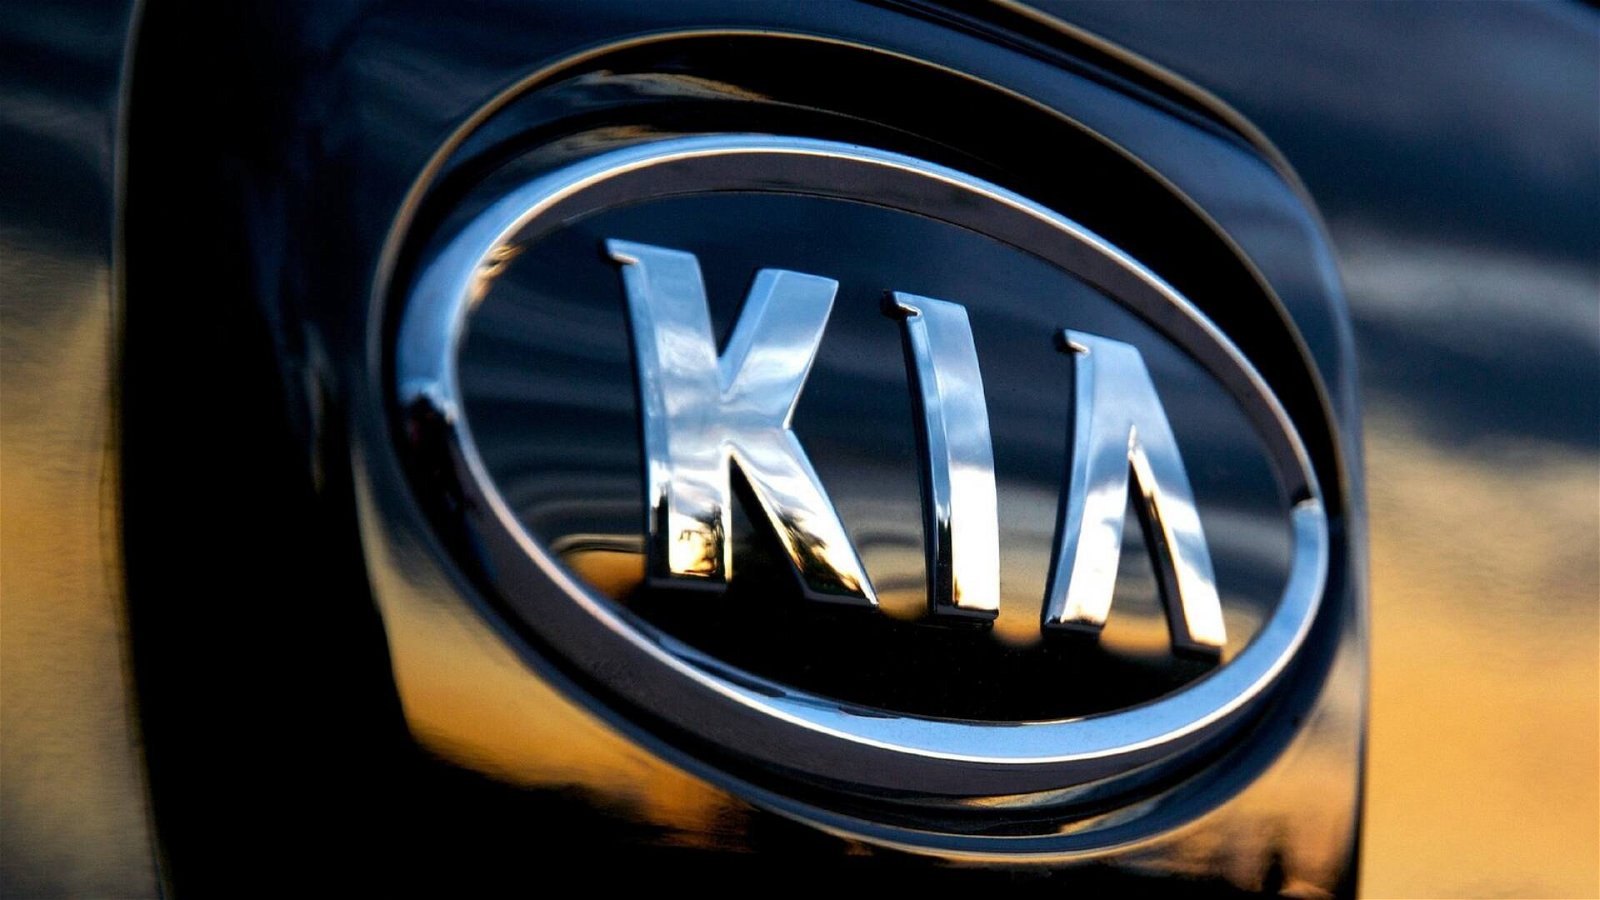 Immagine di KIA richiama 295.000 veicoli negli USA: rischio incendio vano motore